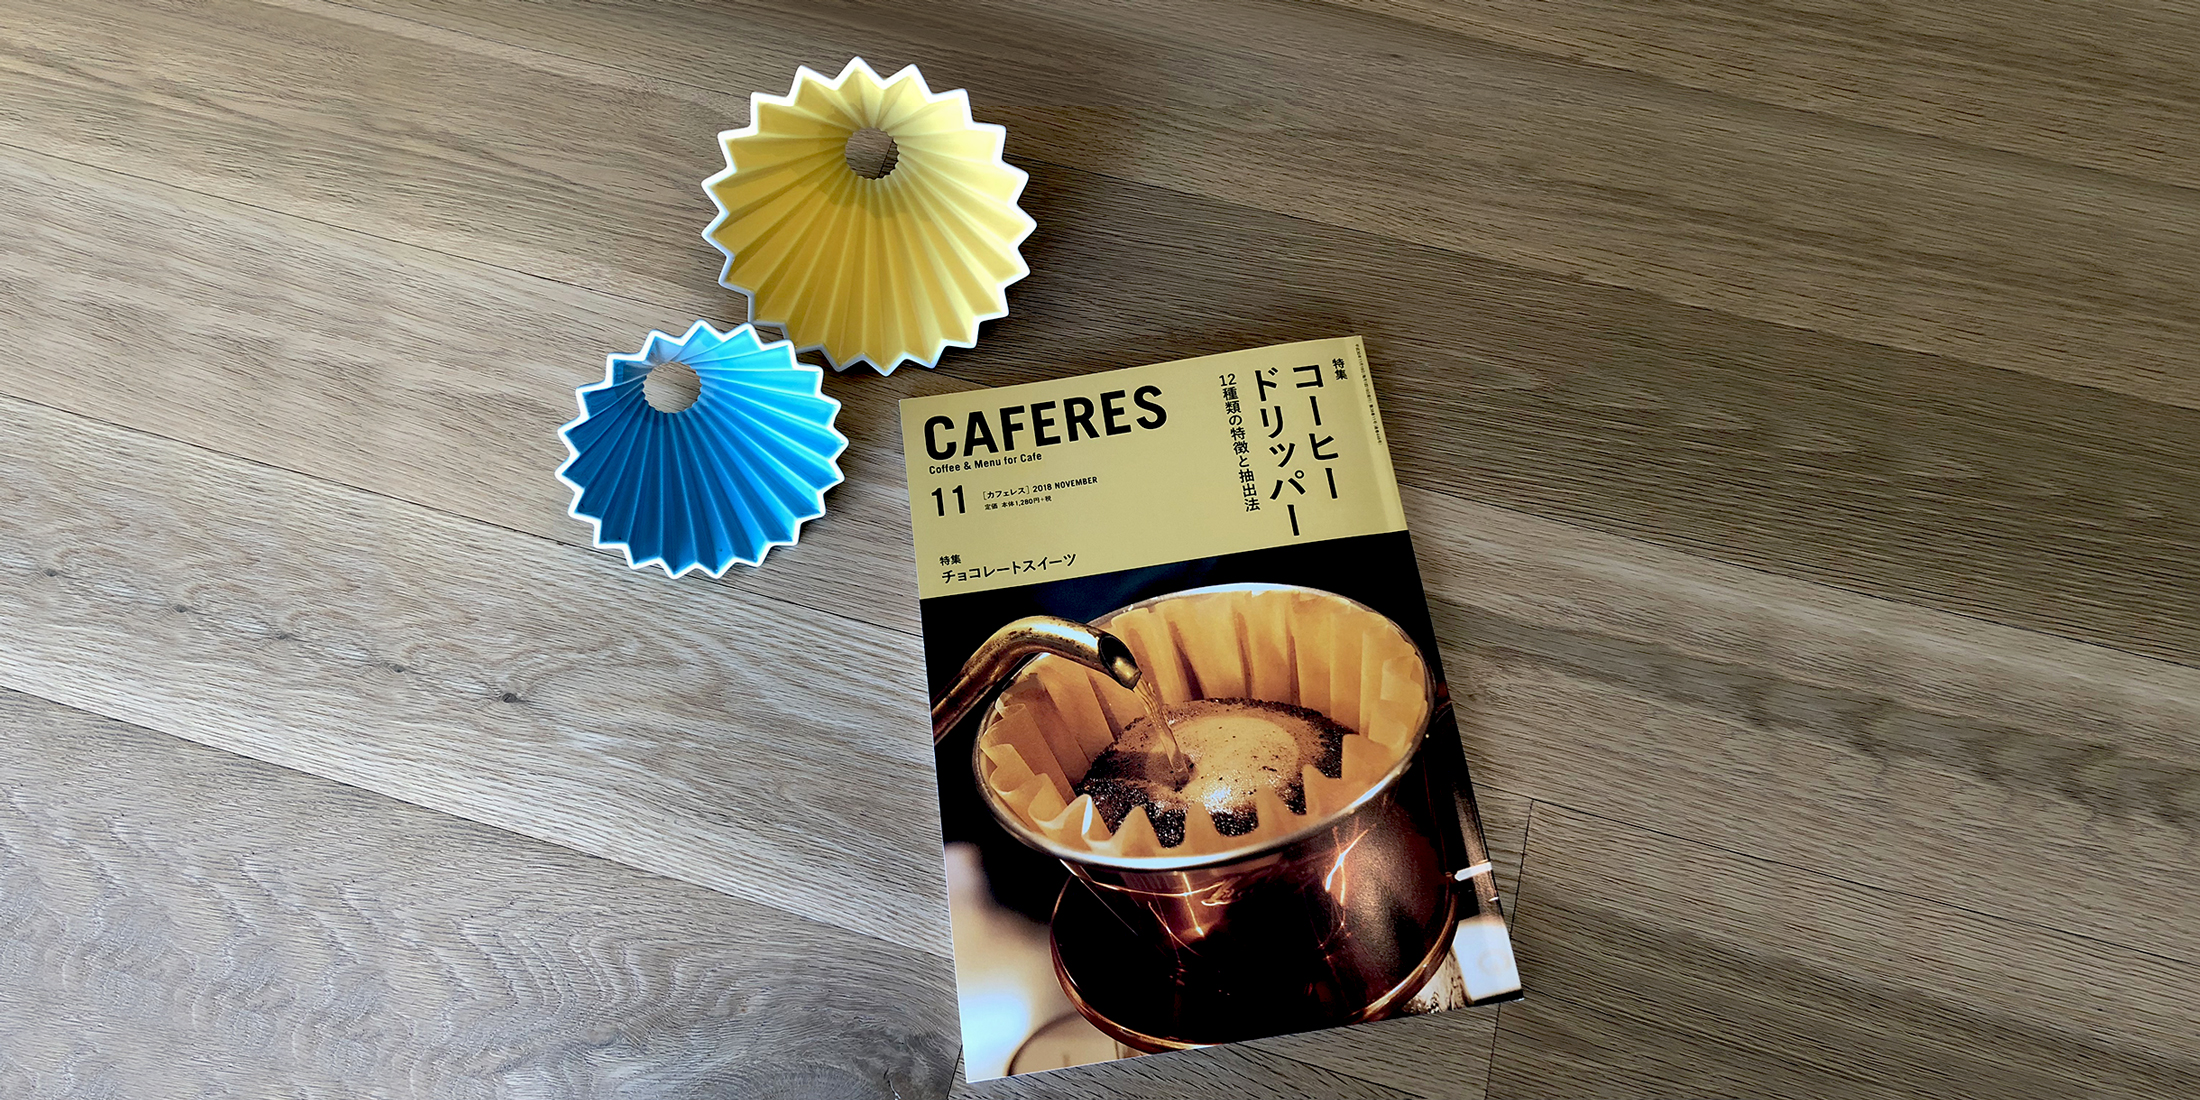 カフェ専門誌「CAFERES」にORIGAMIドリッパーが掲載されました。